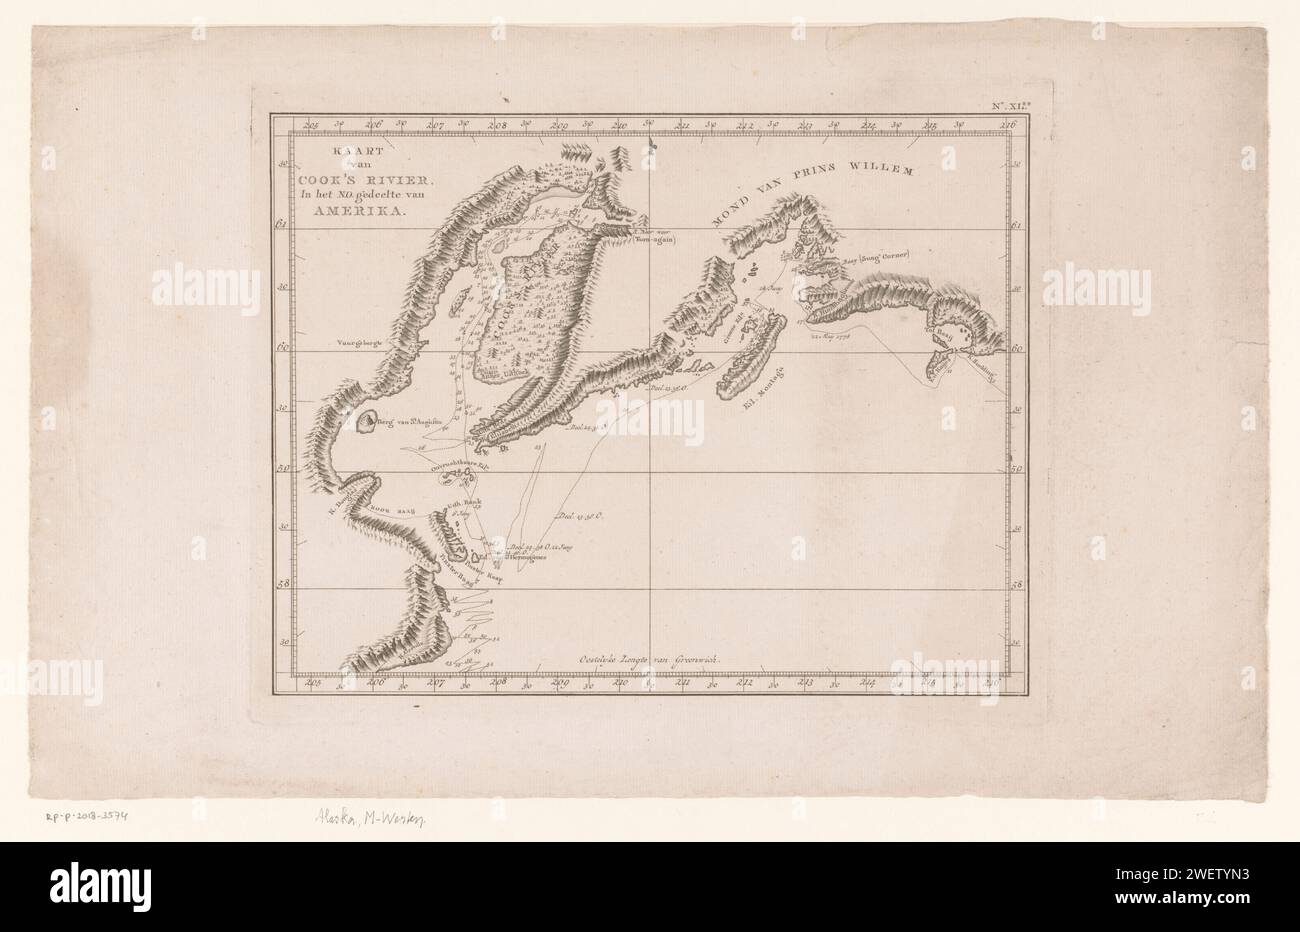 Mappa di Cooks River, America, Anonimo, 1780 - 1800 Stampa mappa di Cooks River. È indicato il percorso della spedizione nel 1778 di James Cook. Una distribuzione di grado. Mappe di incisione cartacea, atlanti dell'America settentrionale e centrale Foto Stock